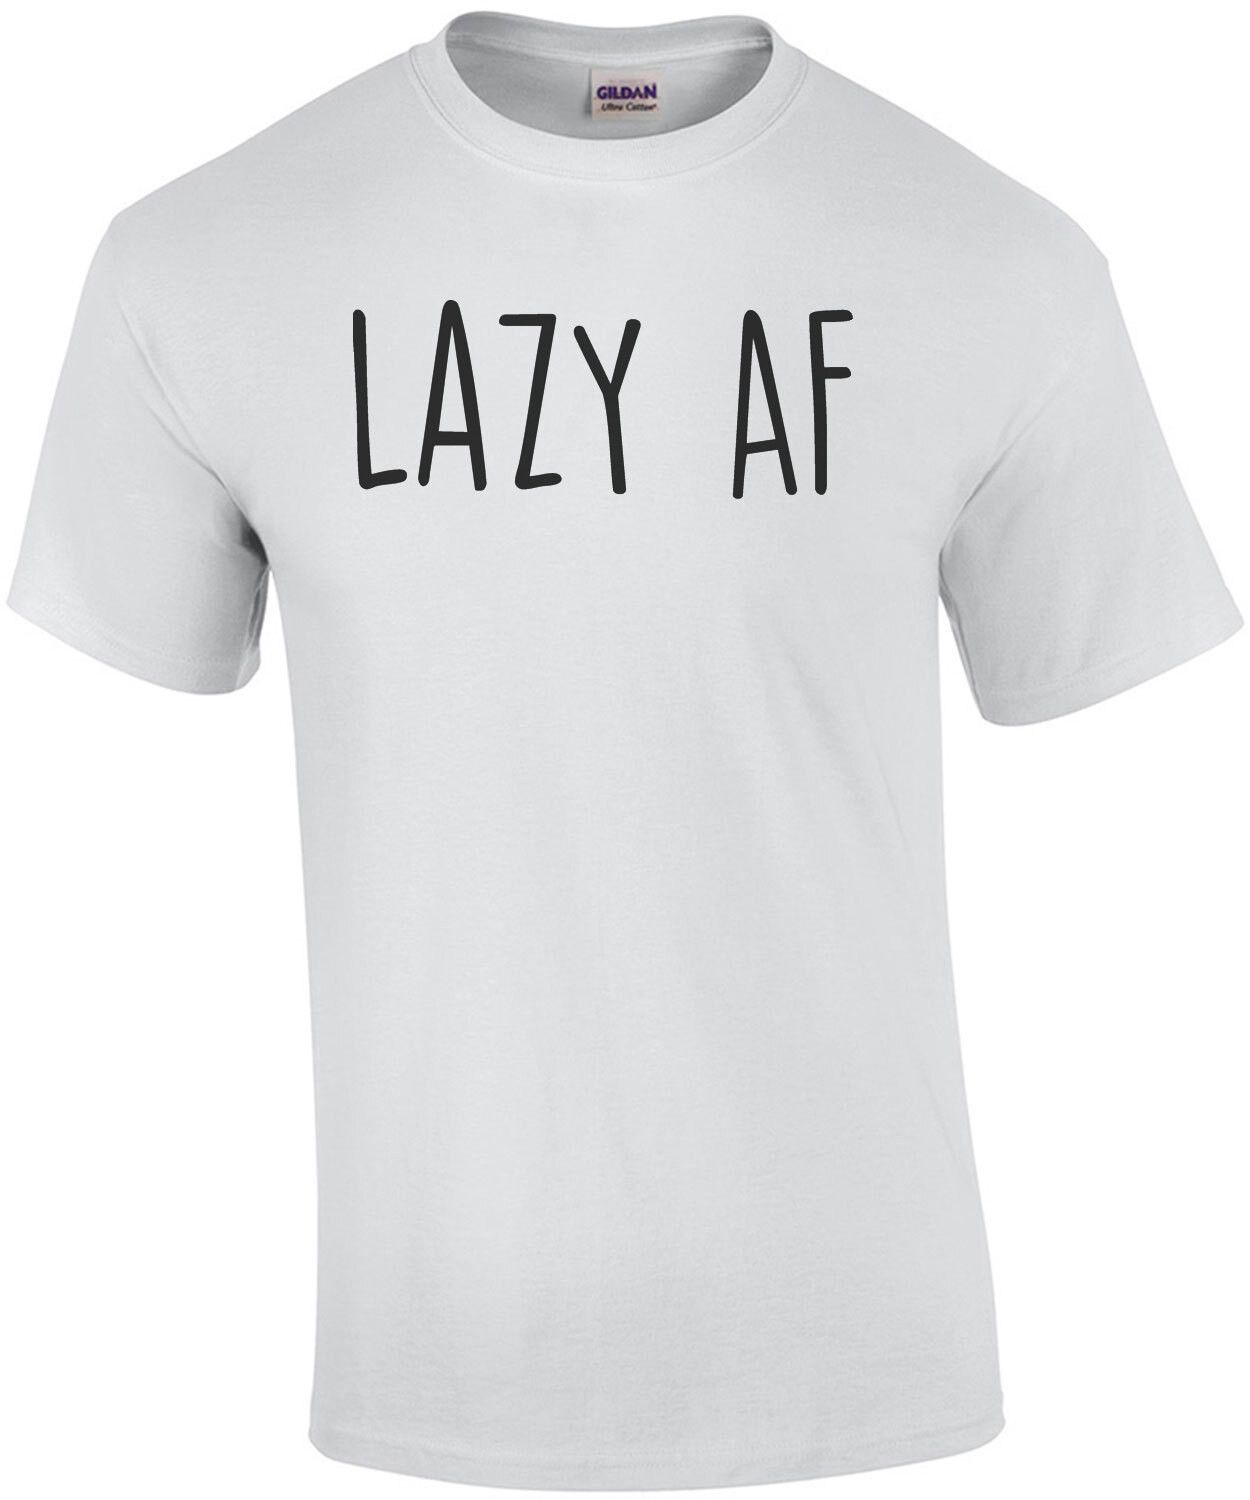 Lazy AF - funny t-shirt